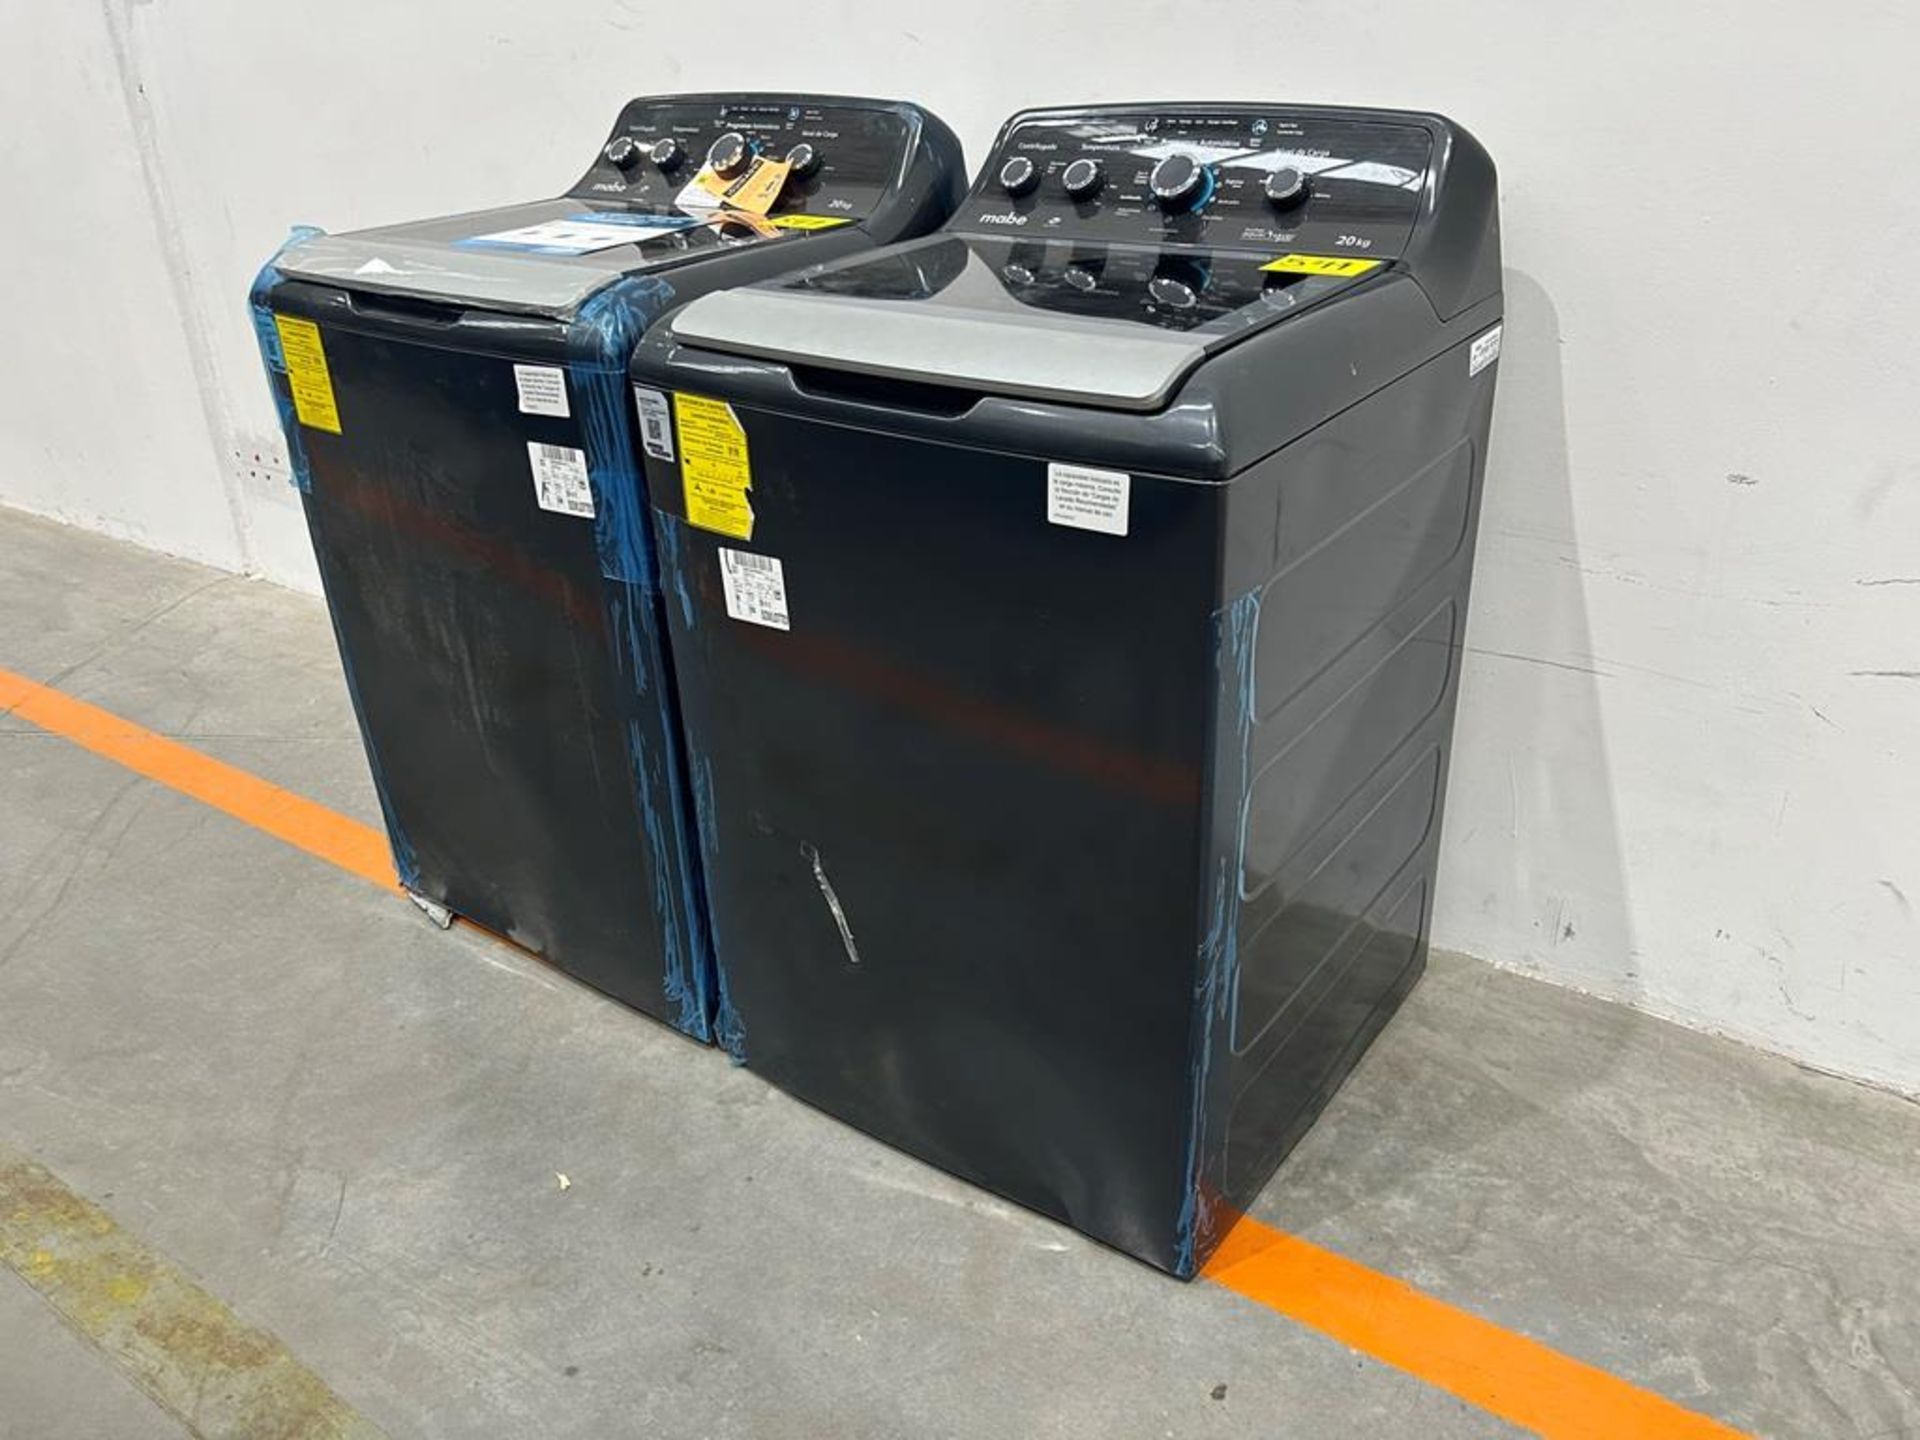 Lote de 2 lavadoras contiene: 1 Lavadora de 20KG Marca MABE, Modelo LMX70214WDAB00, Serie S09985, C - Image 3 of 10